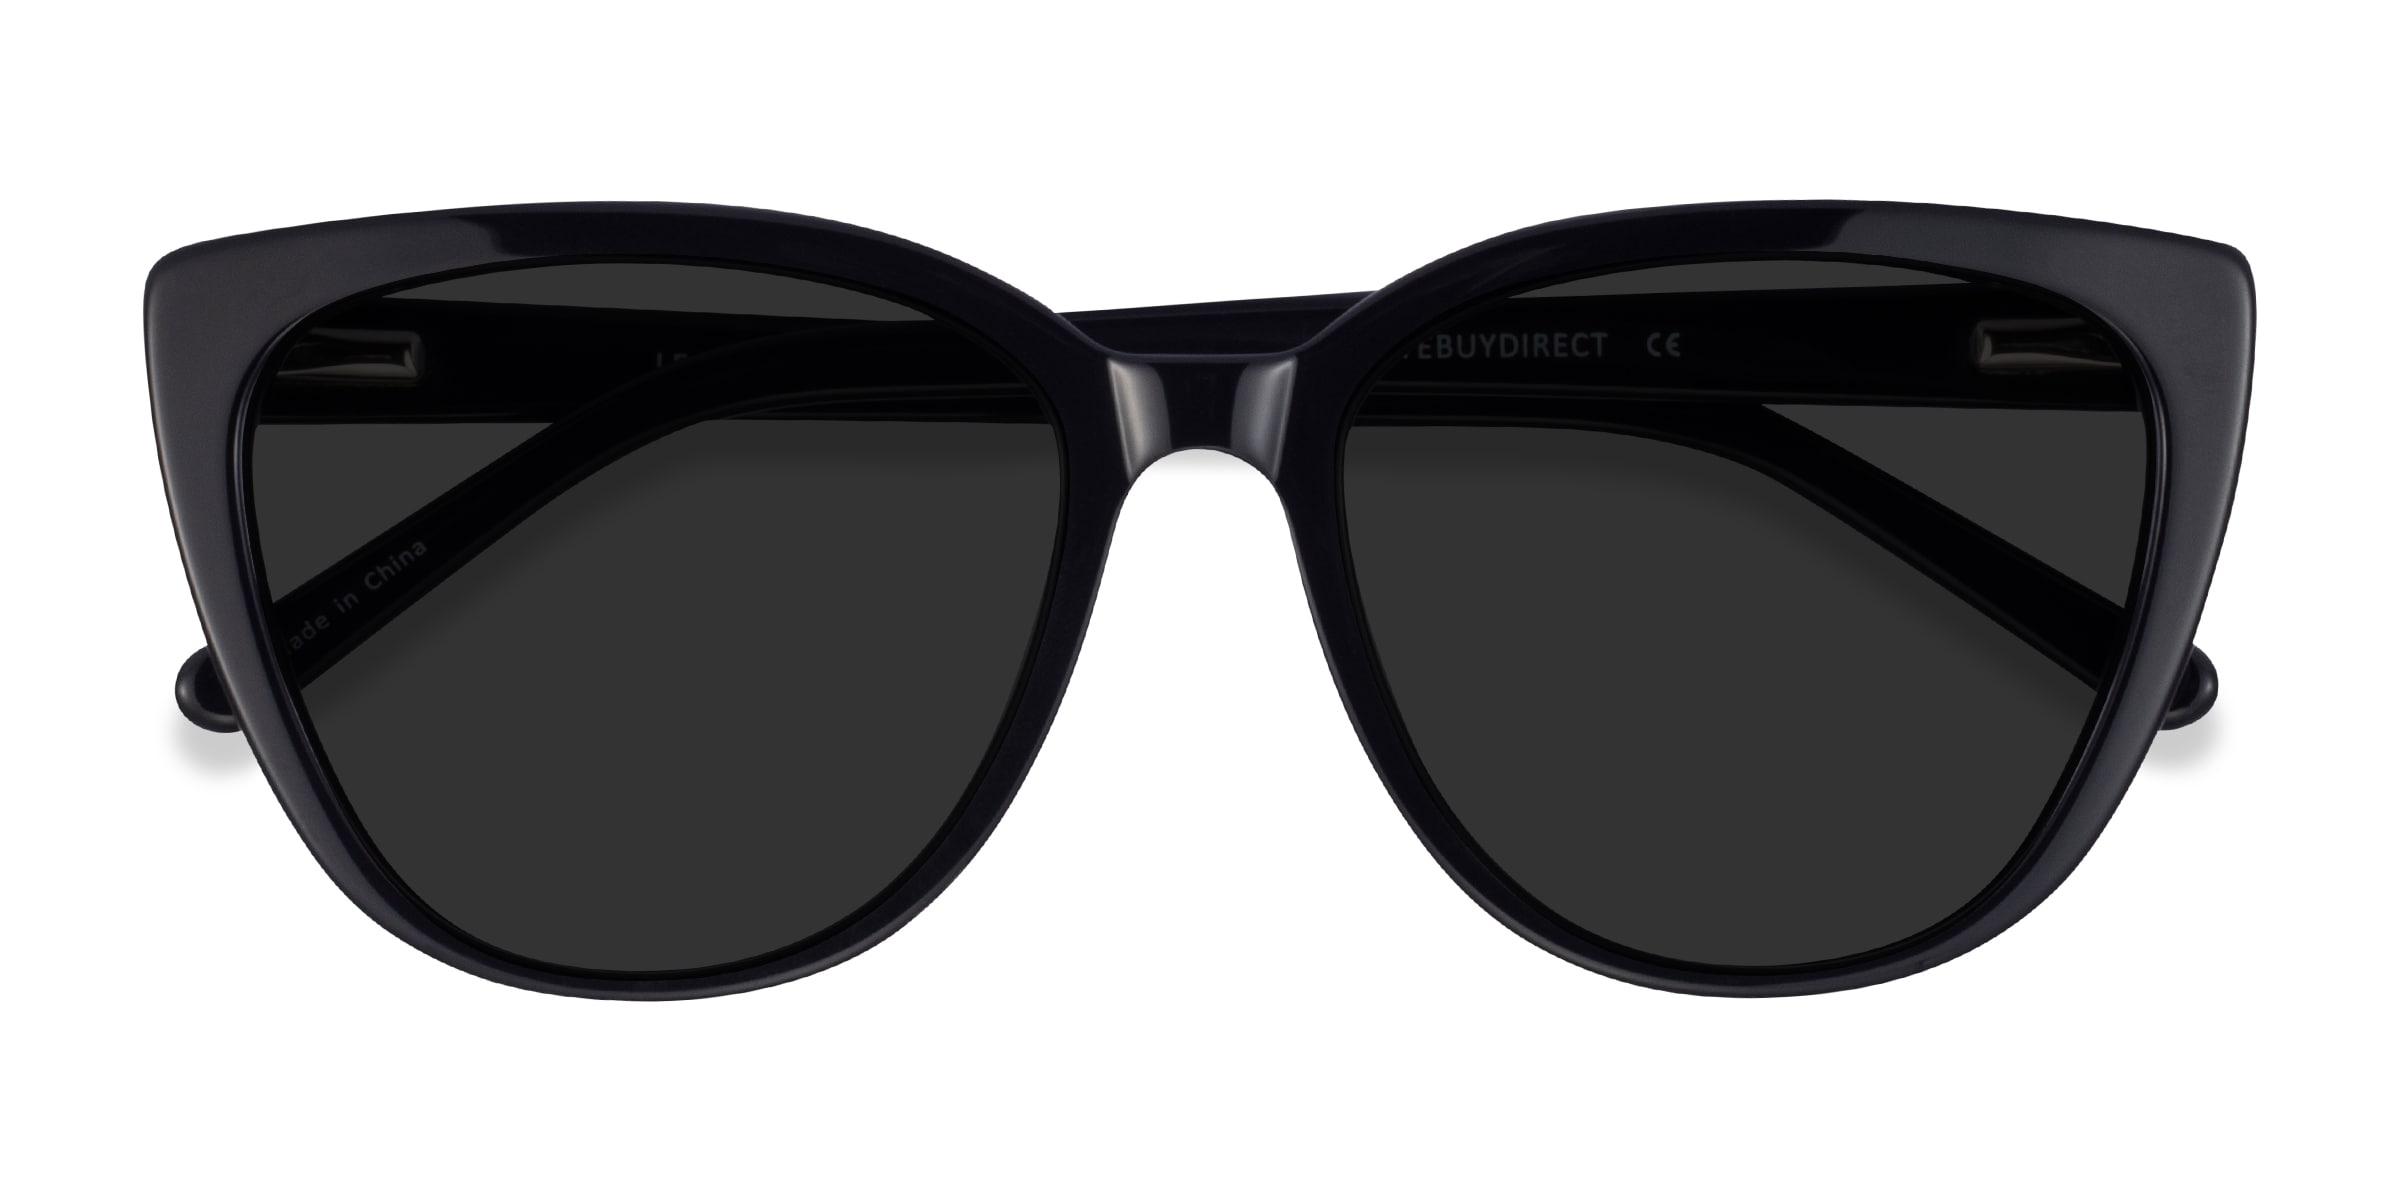 Lemonade - Cat Eye Black Frame Sunglasses For Women | Eyebuydirect